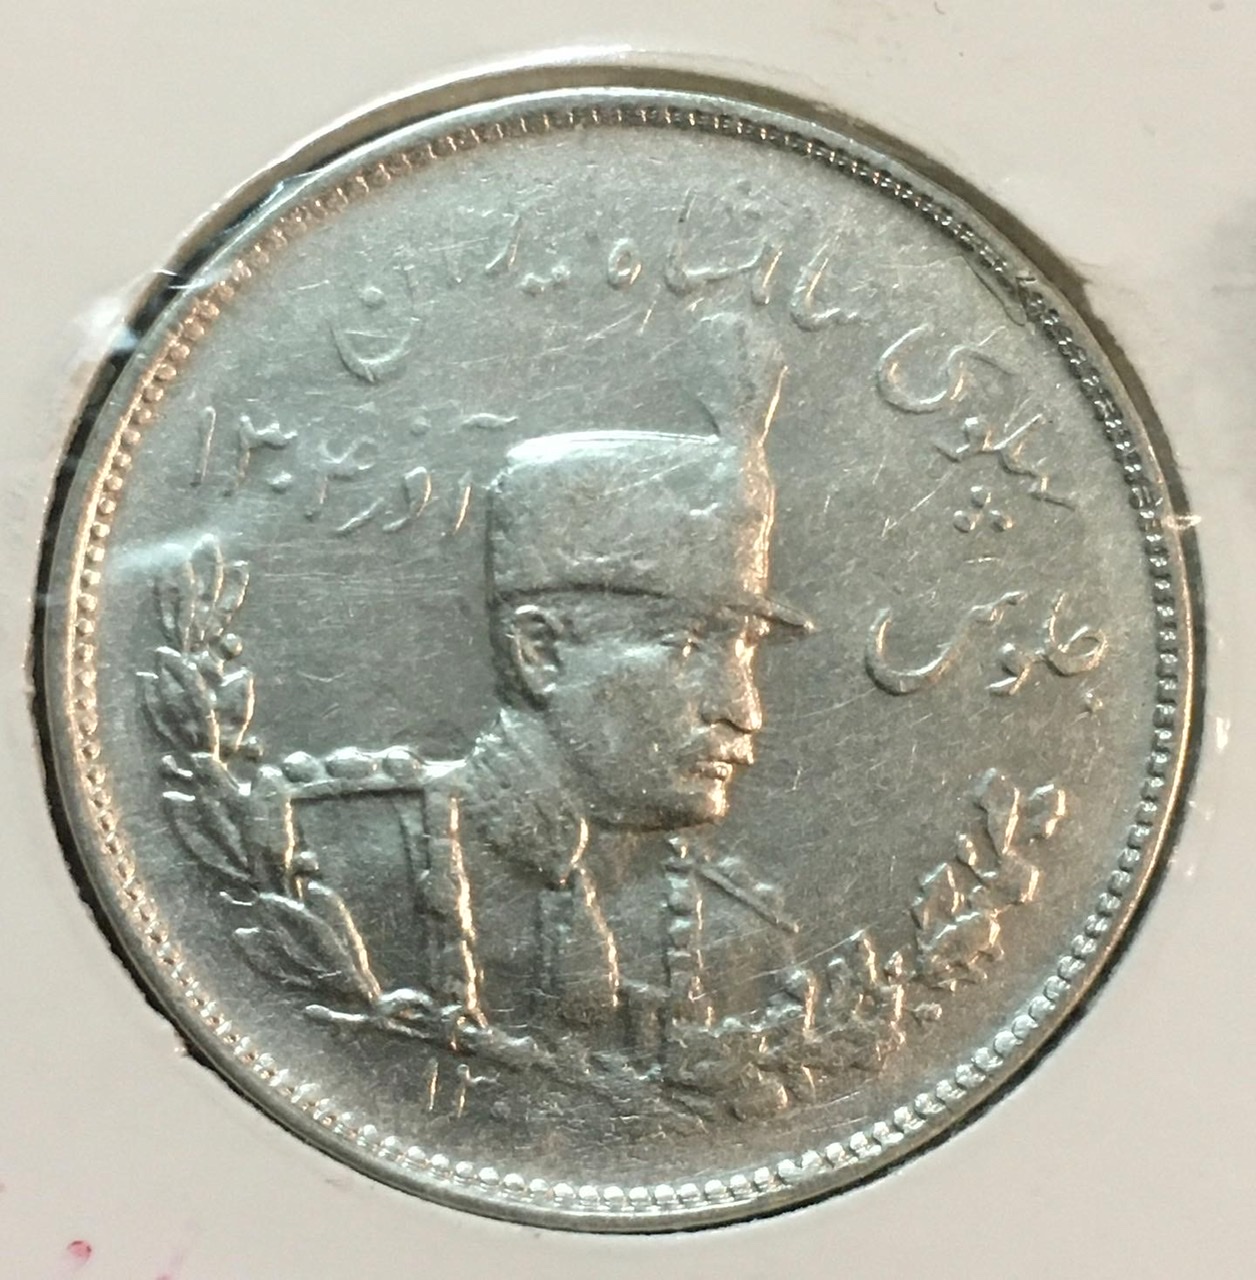 سکه نقره پهلوی